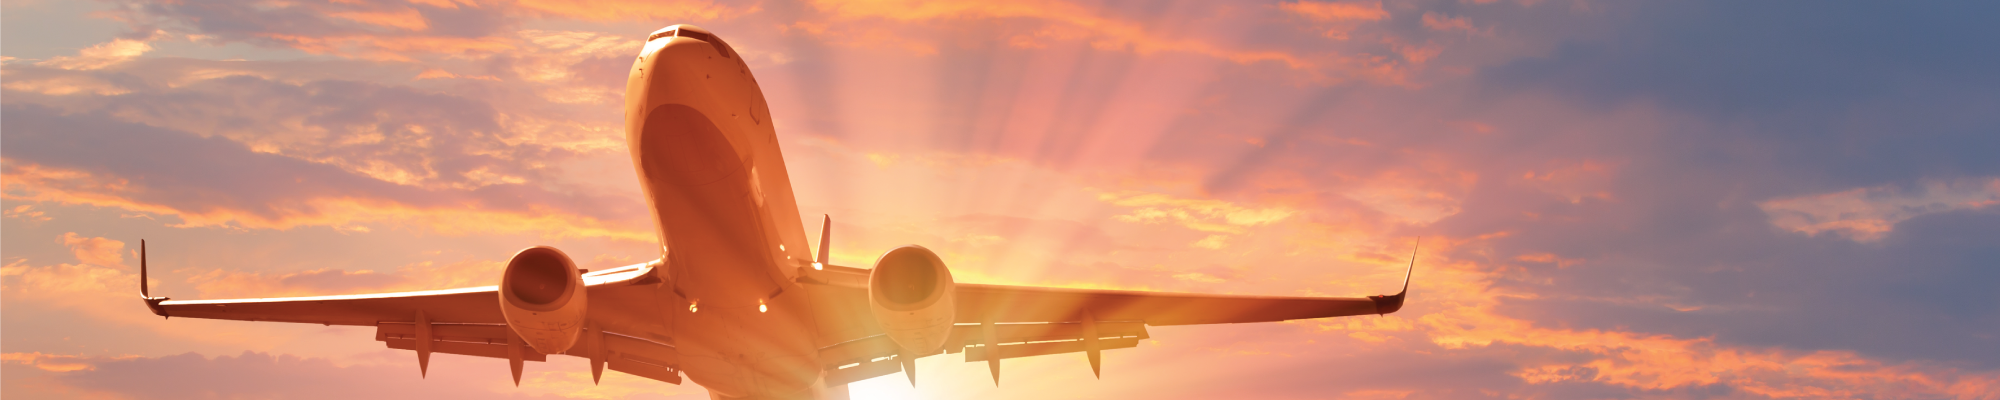 Météo aéronautique Des solutions de météorologie aéronautique conformes aux normes de l'OACI qui répondent à vos besoins spécifiques en matière d'aéroports